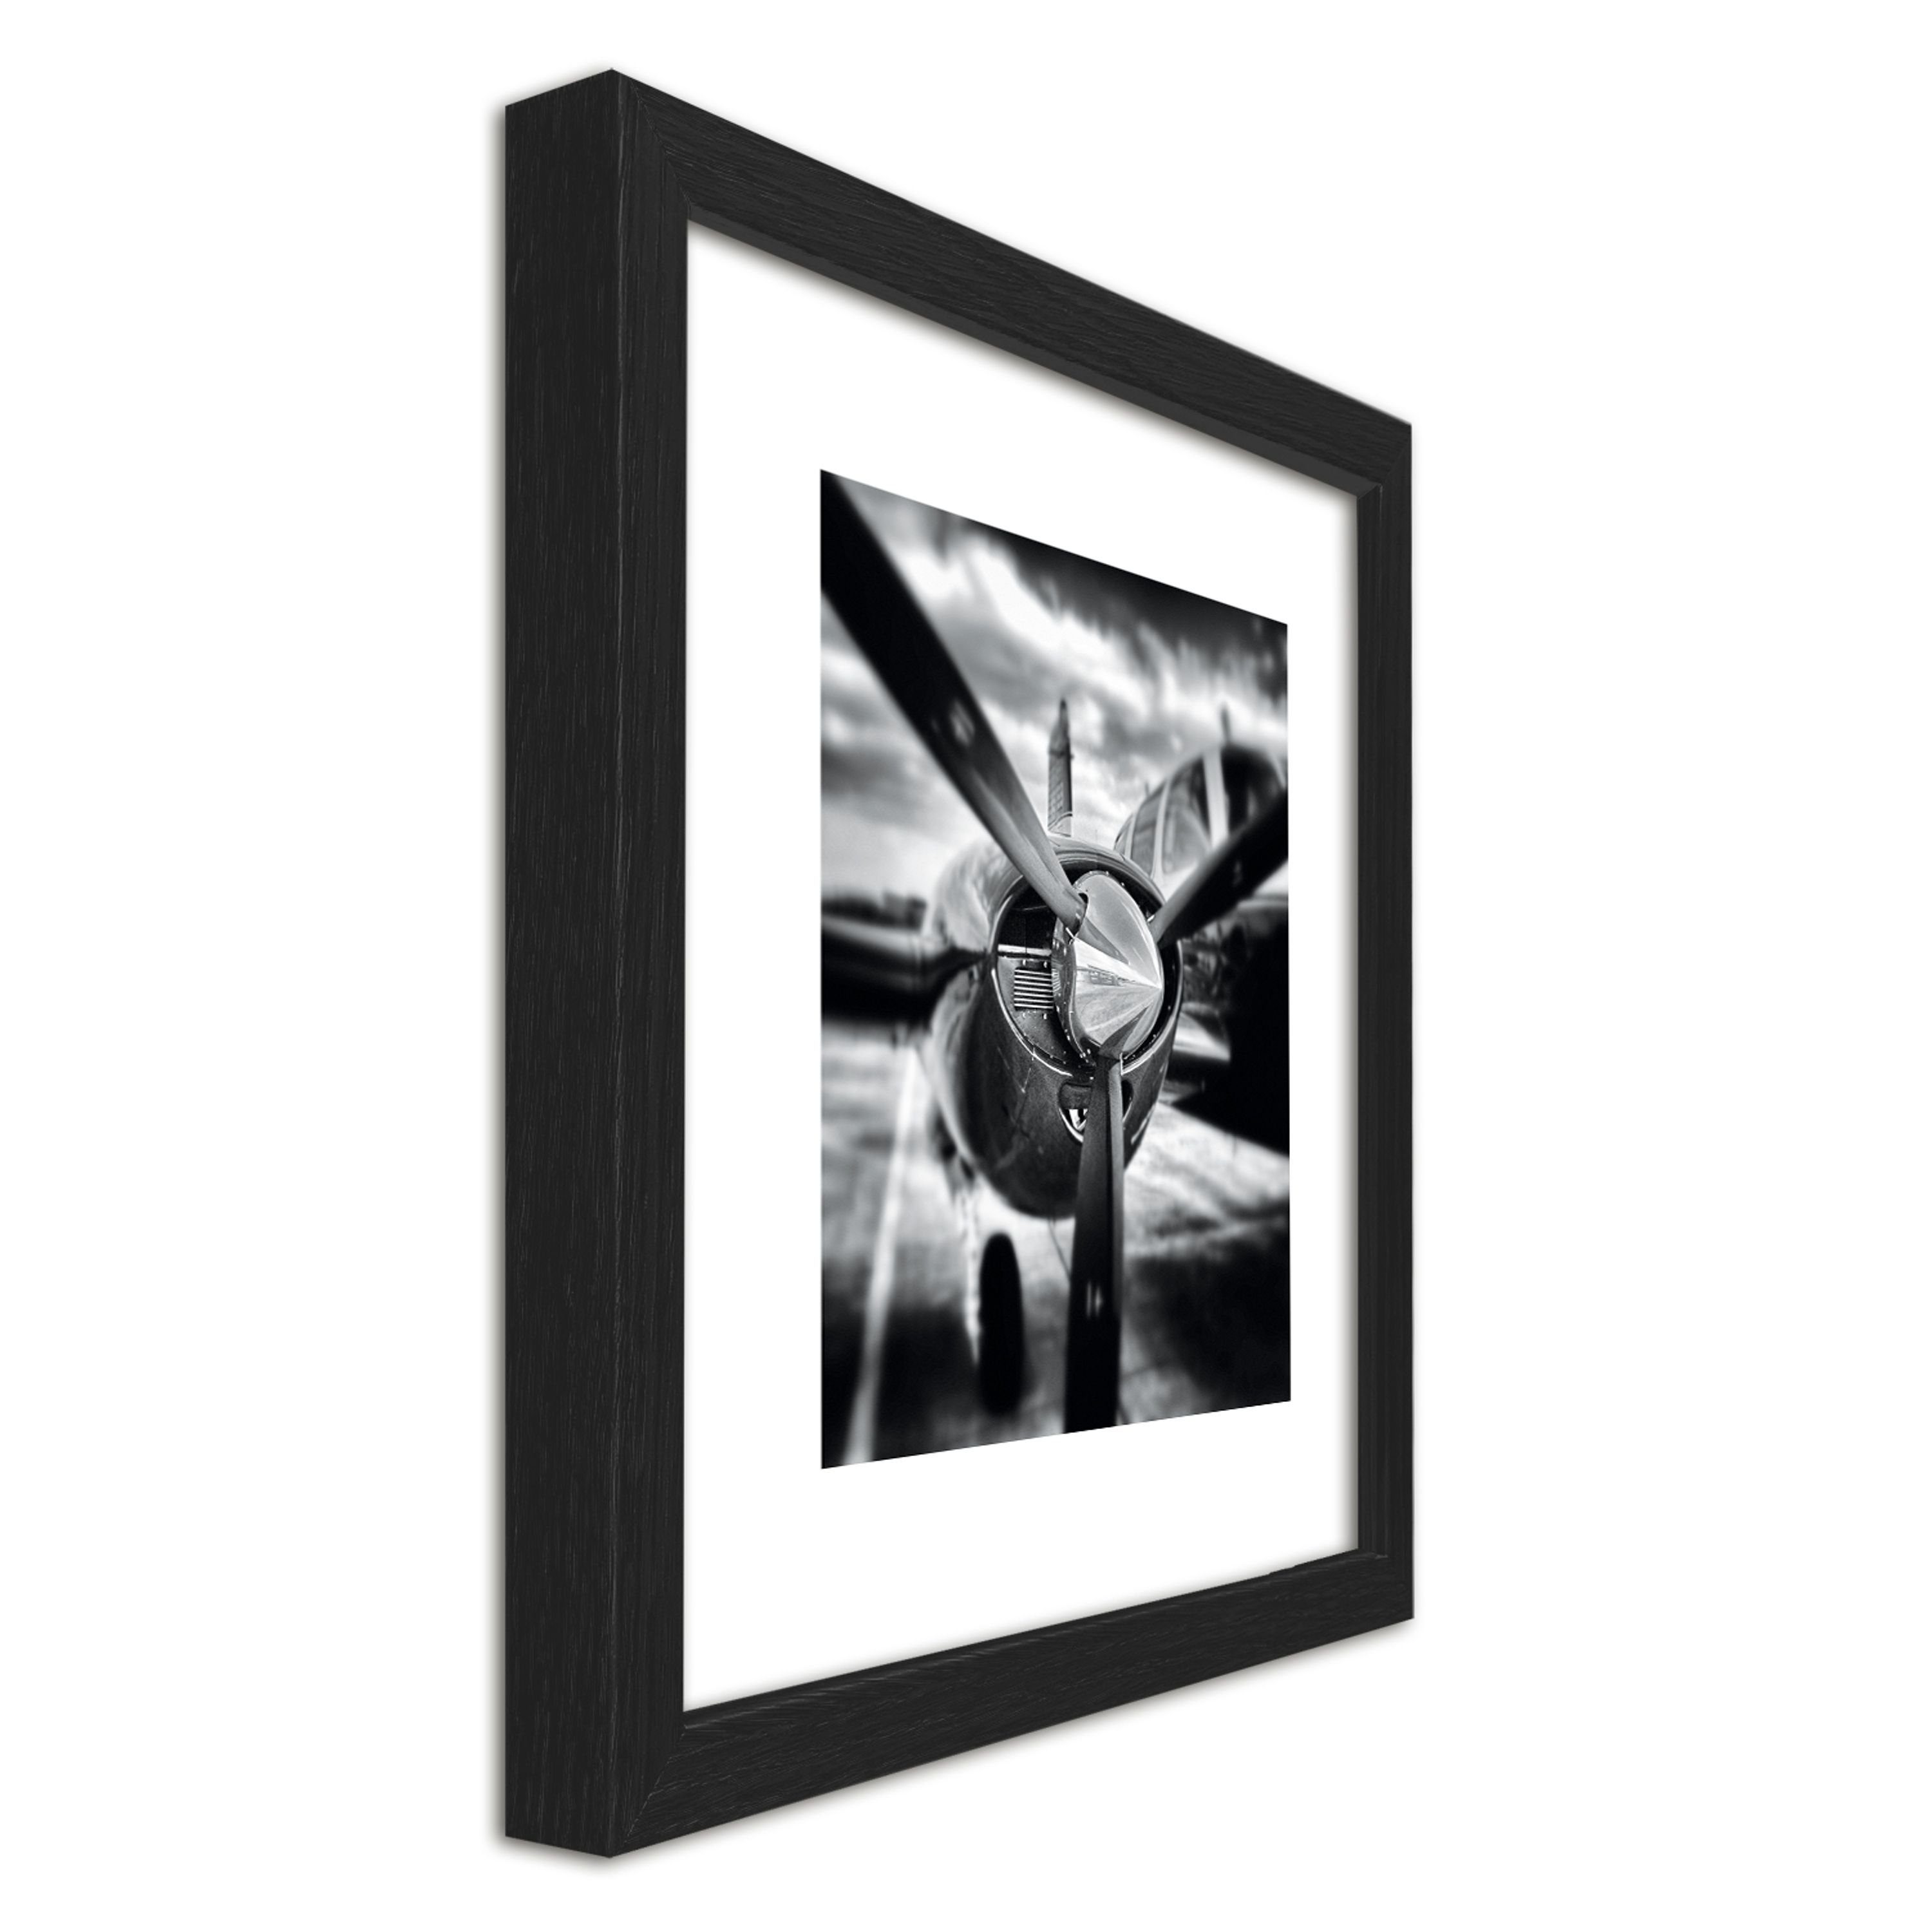 Schwarz-Weiß Bild Wandbild, / gerahmt Bild 30x30cm artissimo inkl. / Flugzeuge II Holz-Rahmen Rahmen Zeichnung: Design-Poster mit